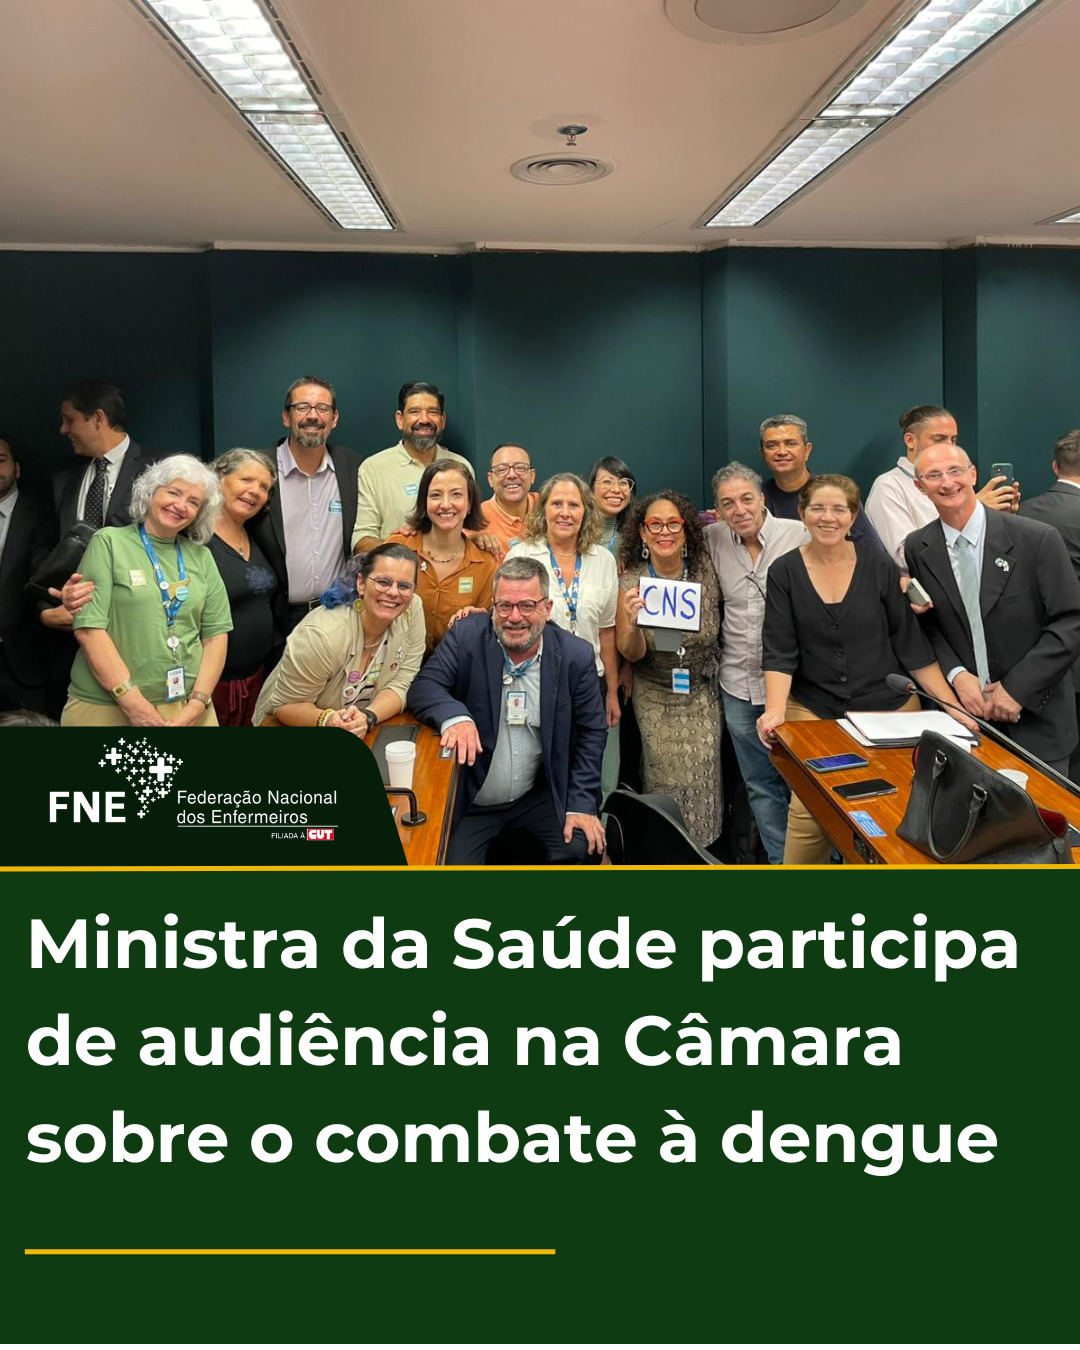 FNE participa de Audiência com Ministra da Saúde na Câmara dos deputados sobre o combate à dengue